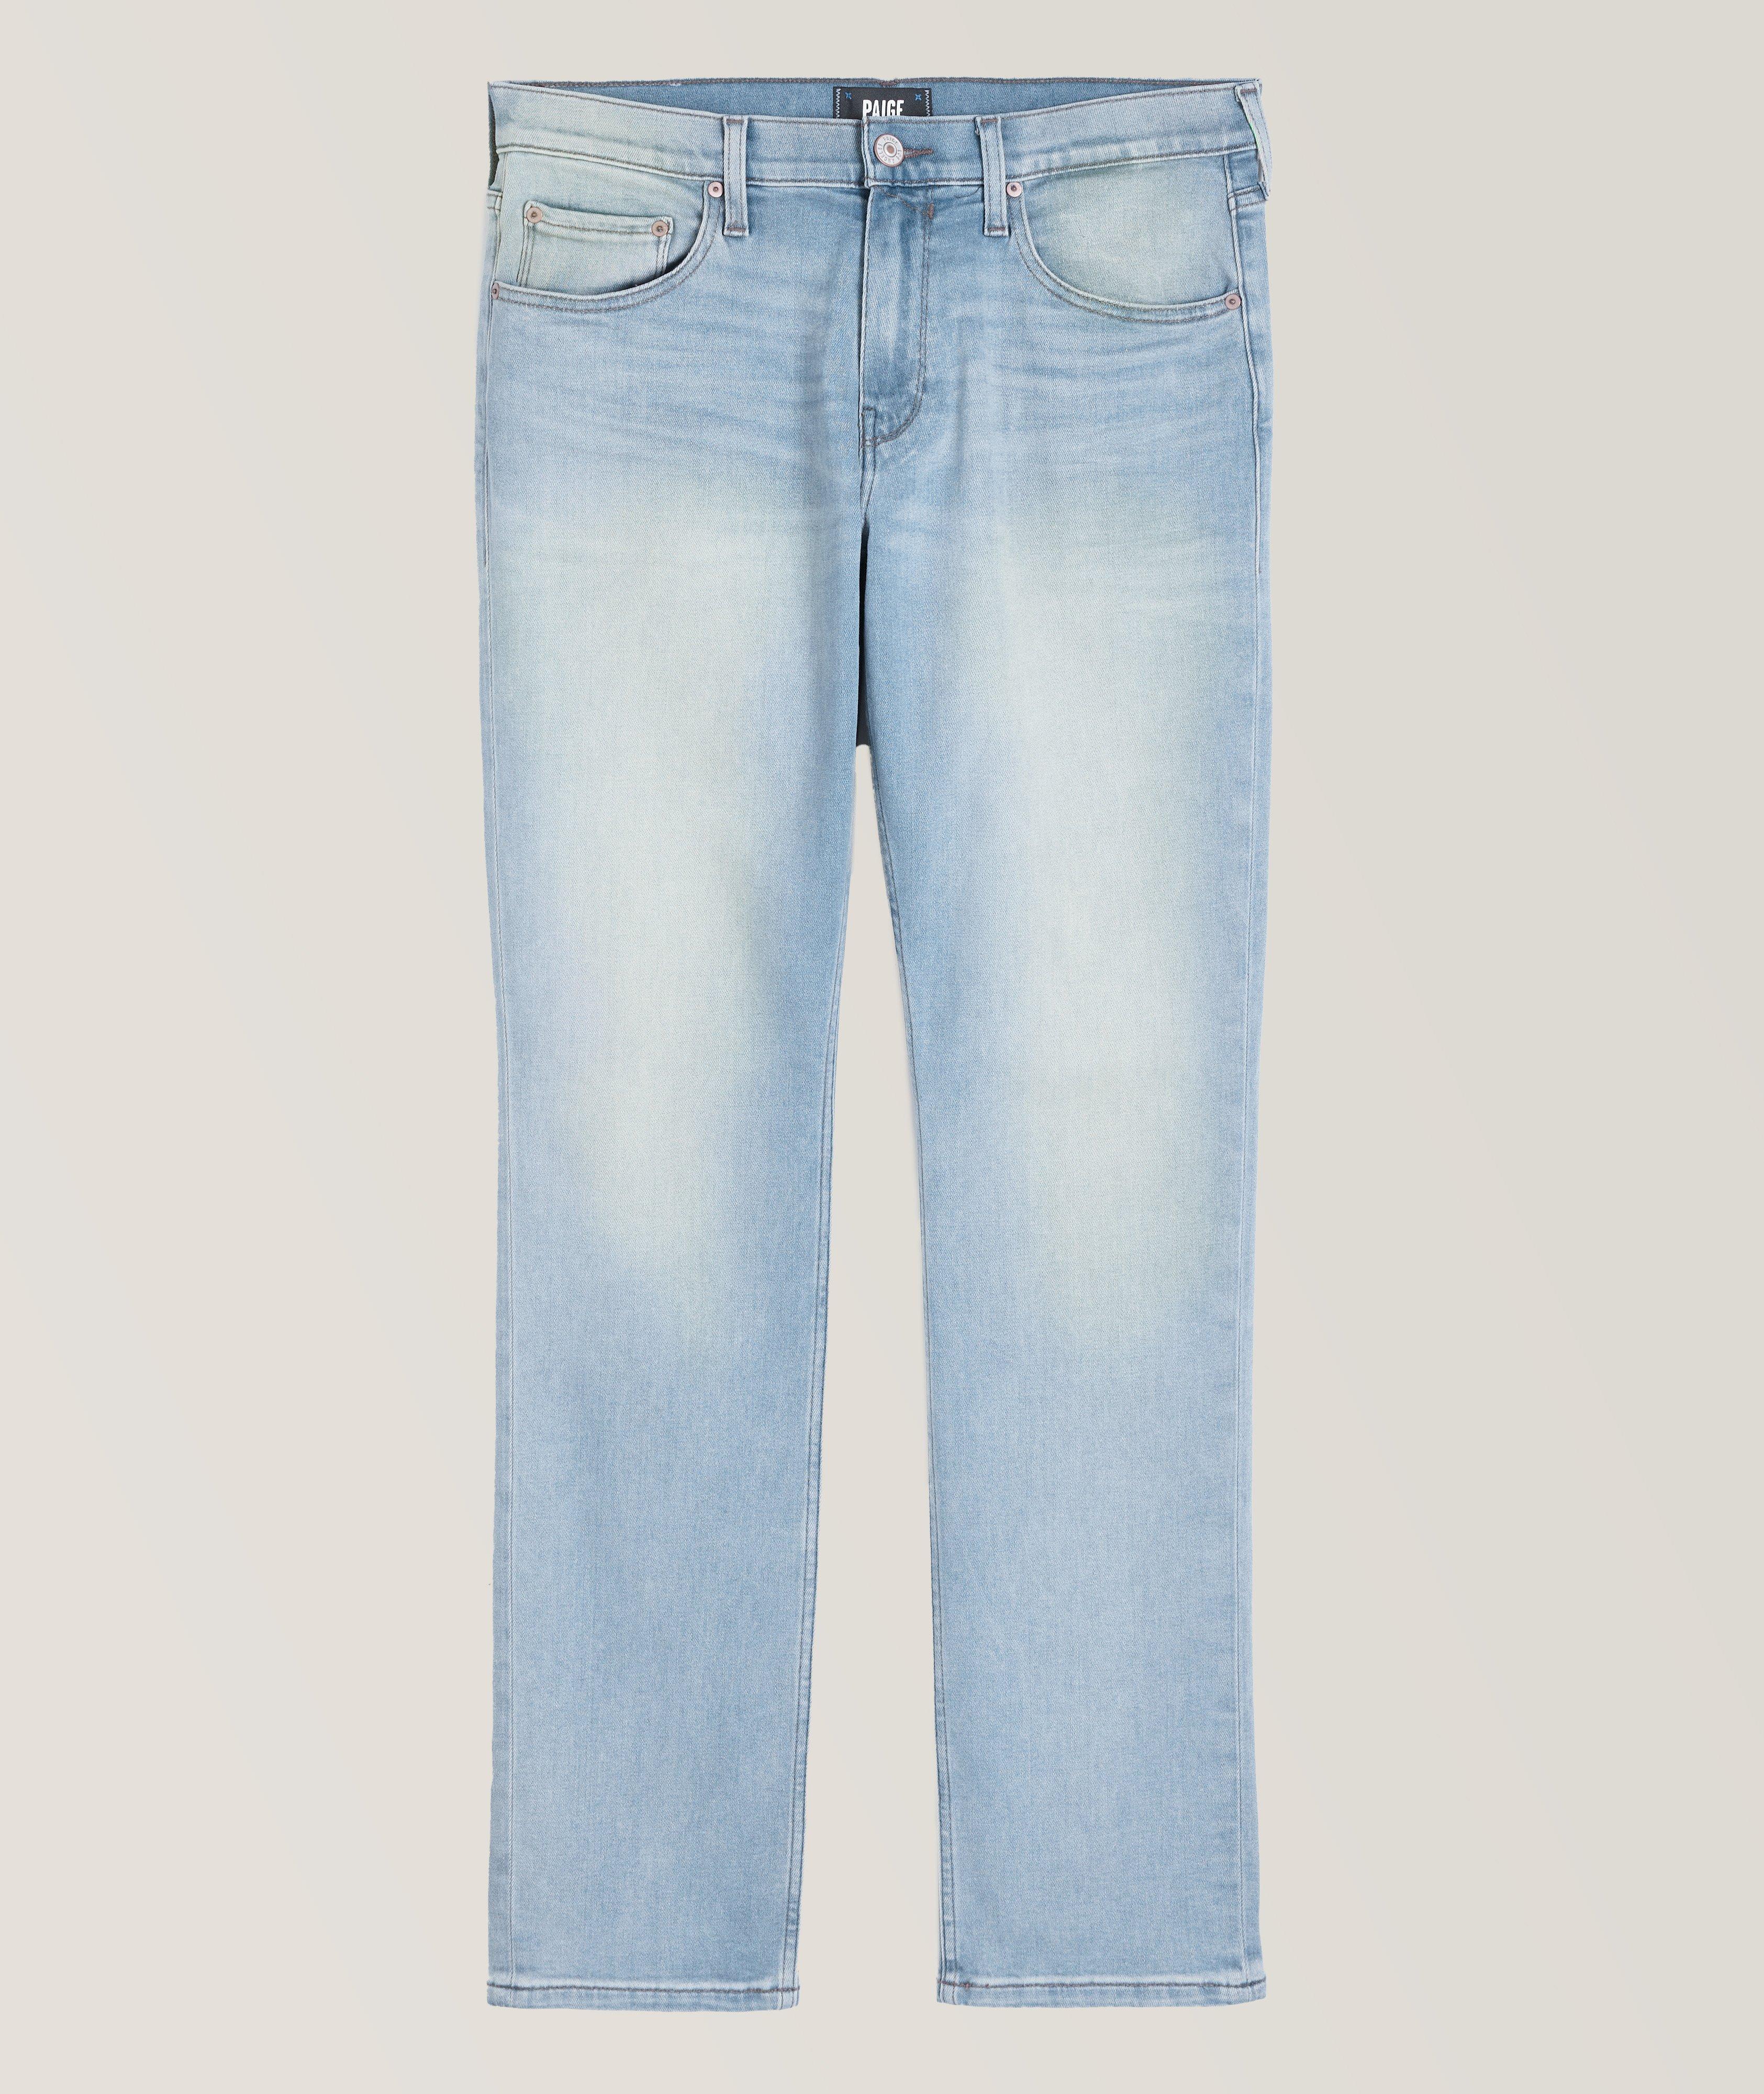 Federal Transcend Vintage Slim Fit Jeans